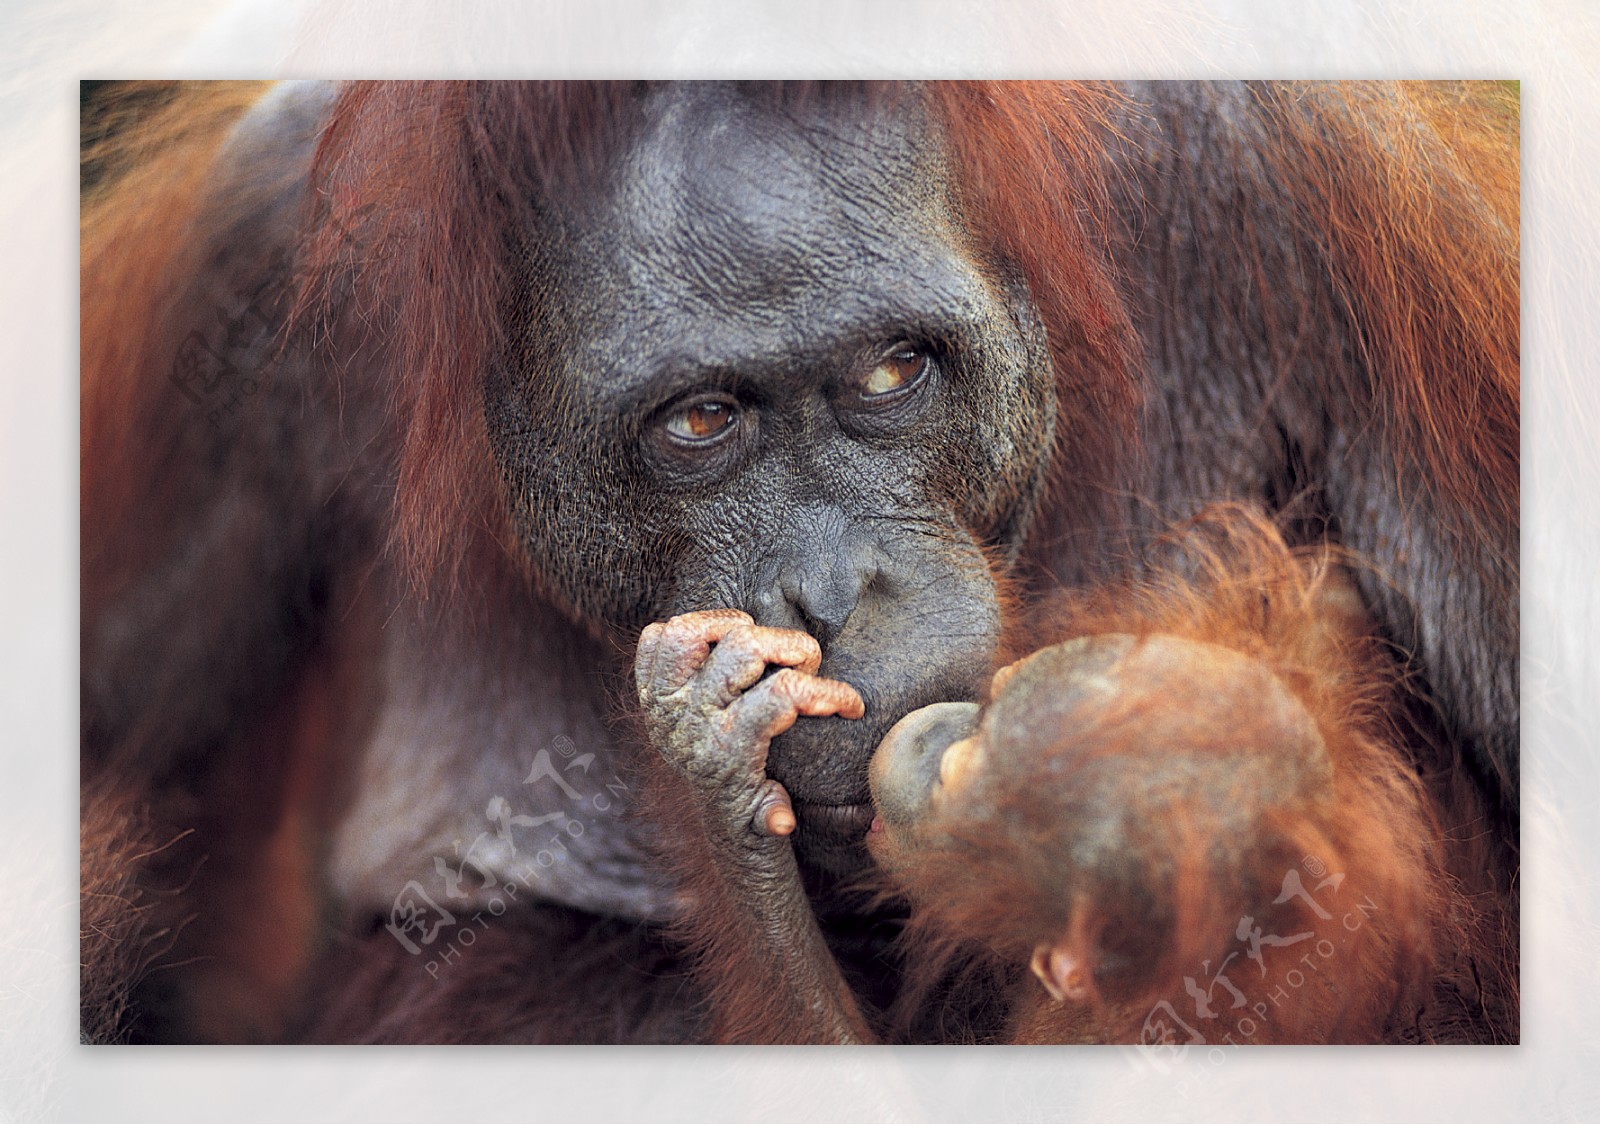 动物世界的母女红猩猩